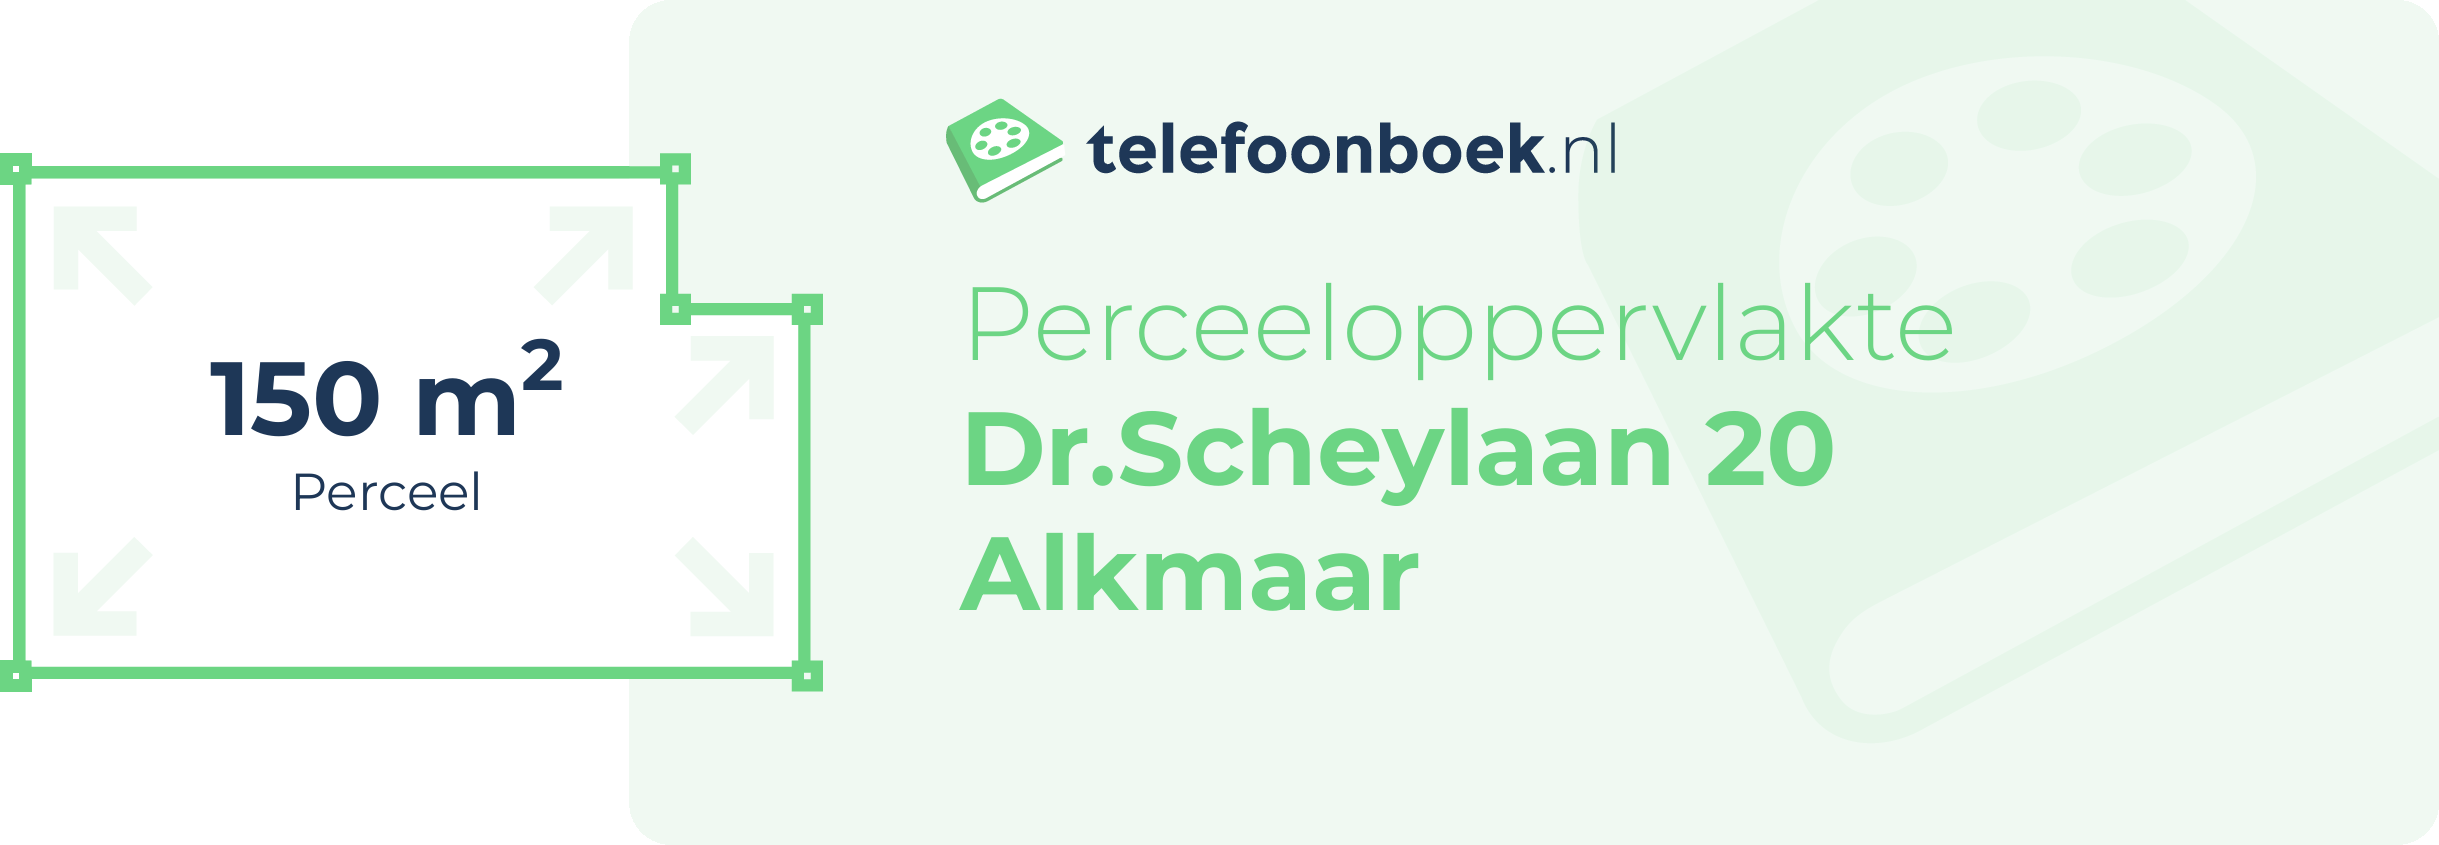 Perceeloppervlakte Dr.Scheylaan 20 Alkmaar